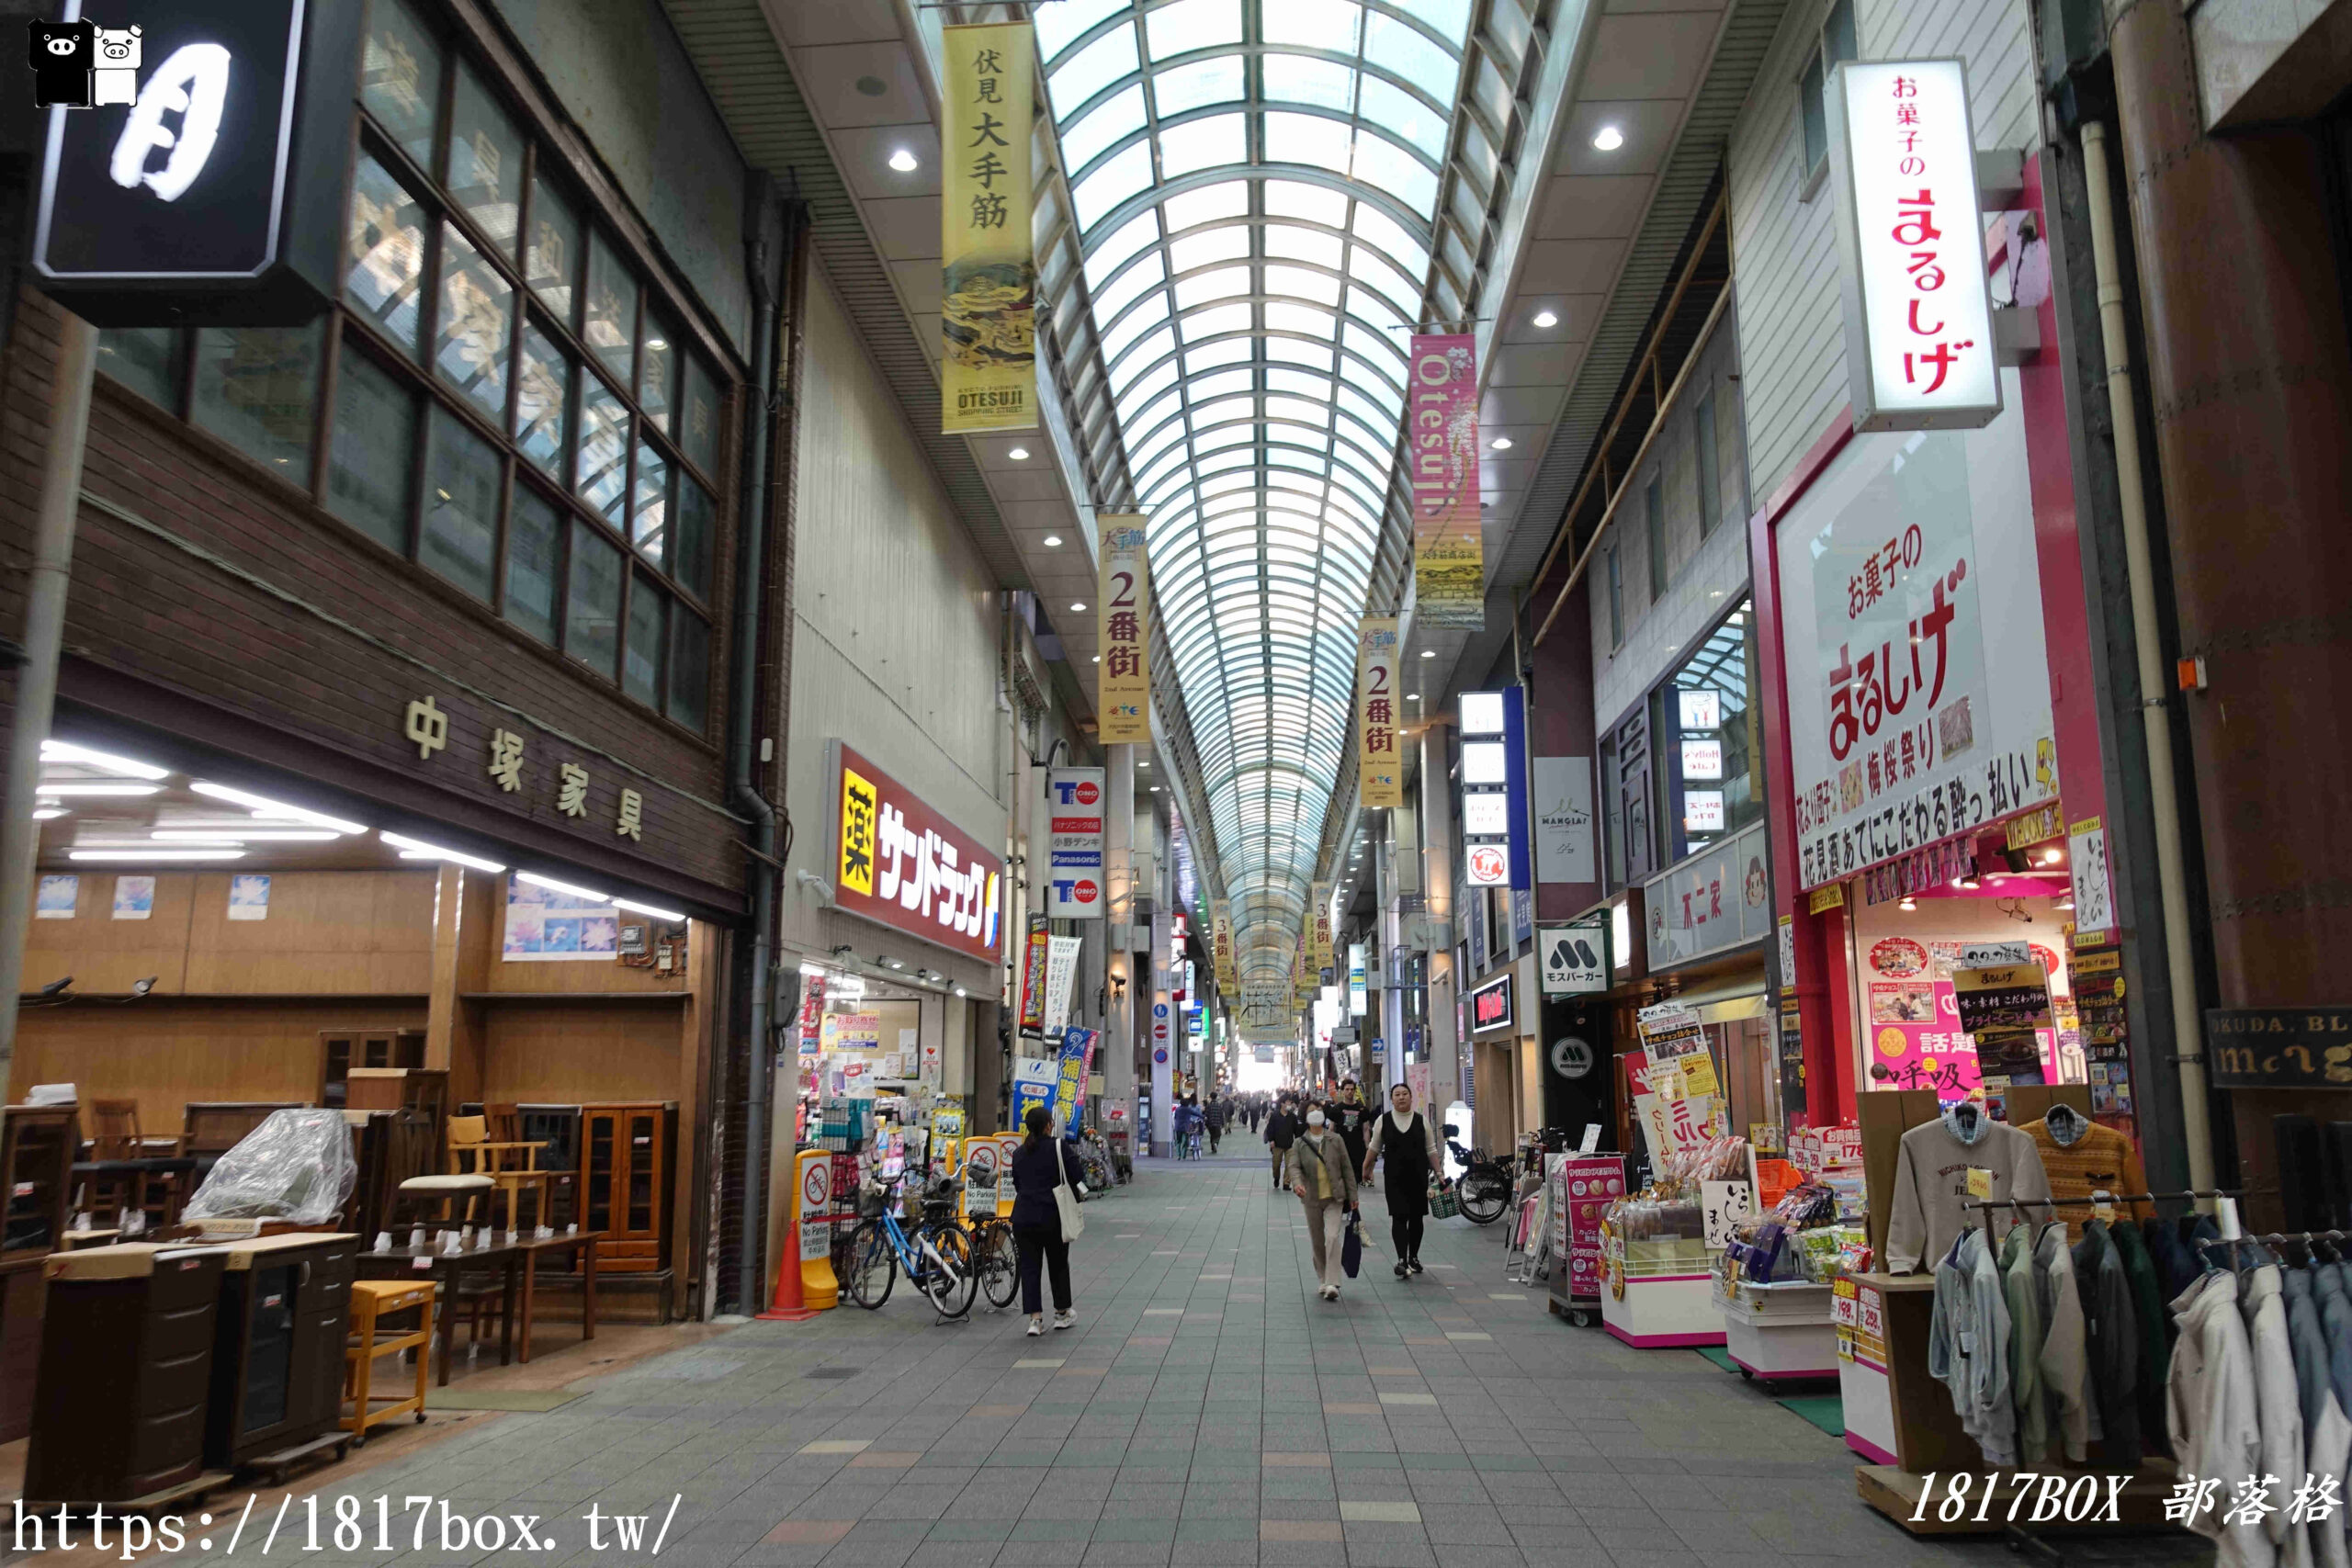 【京都景點】伏見大手筋商店街。歴史と水と酒の街。伏見地區最熱鬧的商店街之一